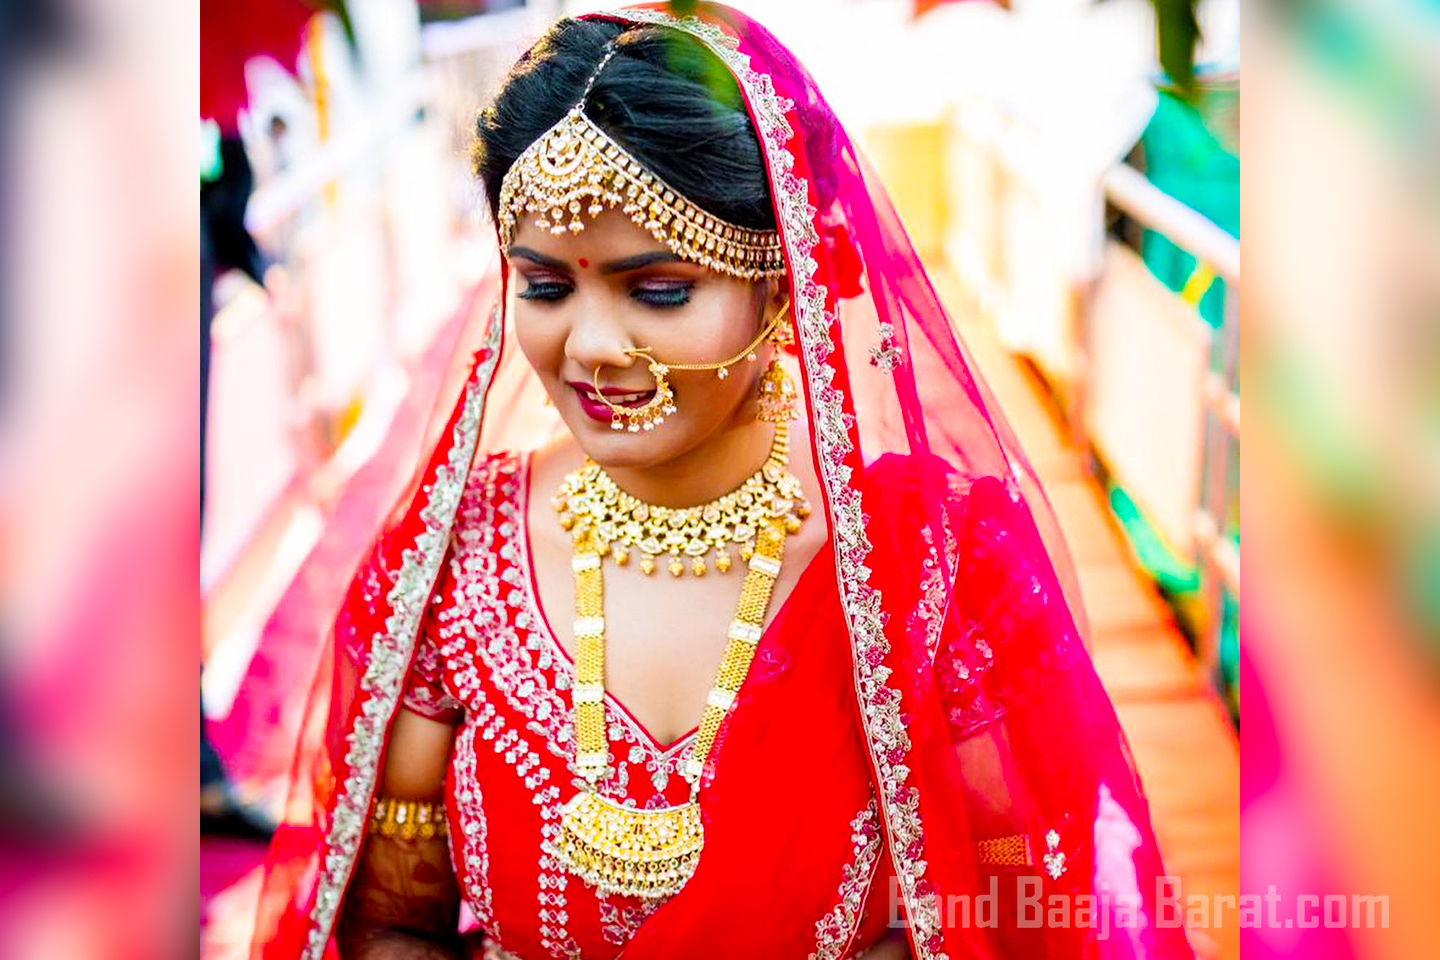 Hinal modi makeup in mumbai 